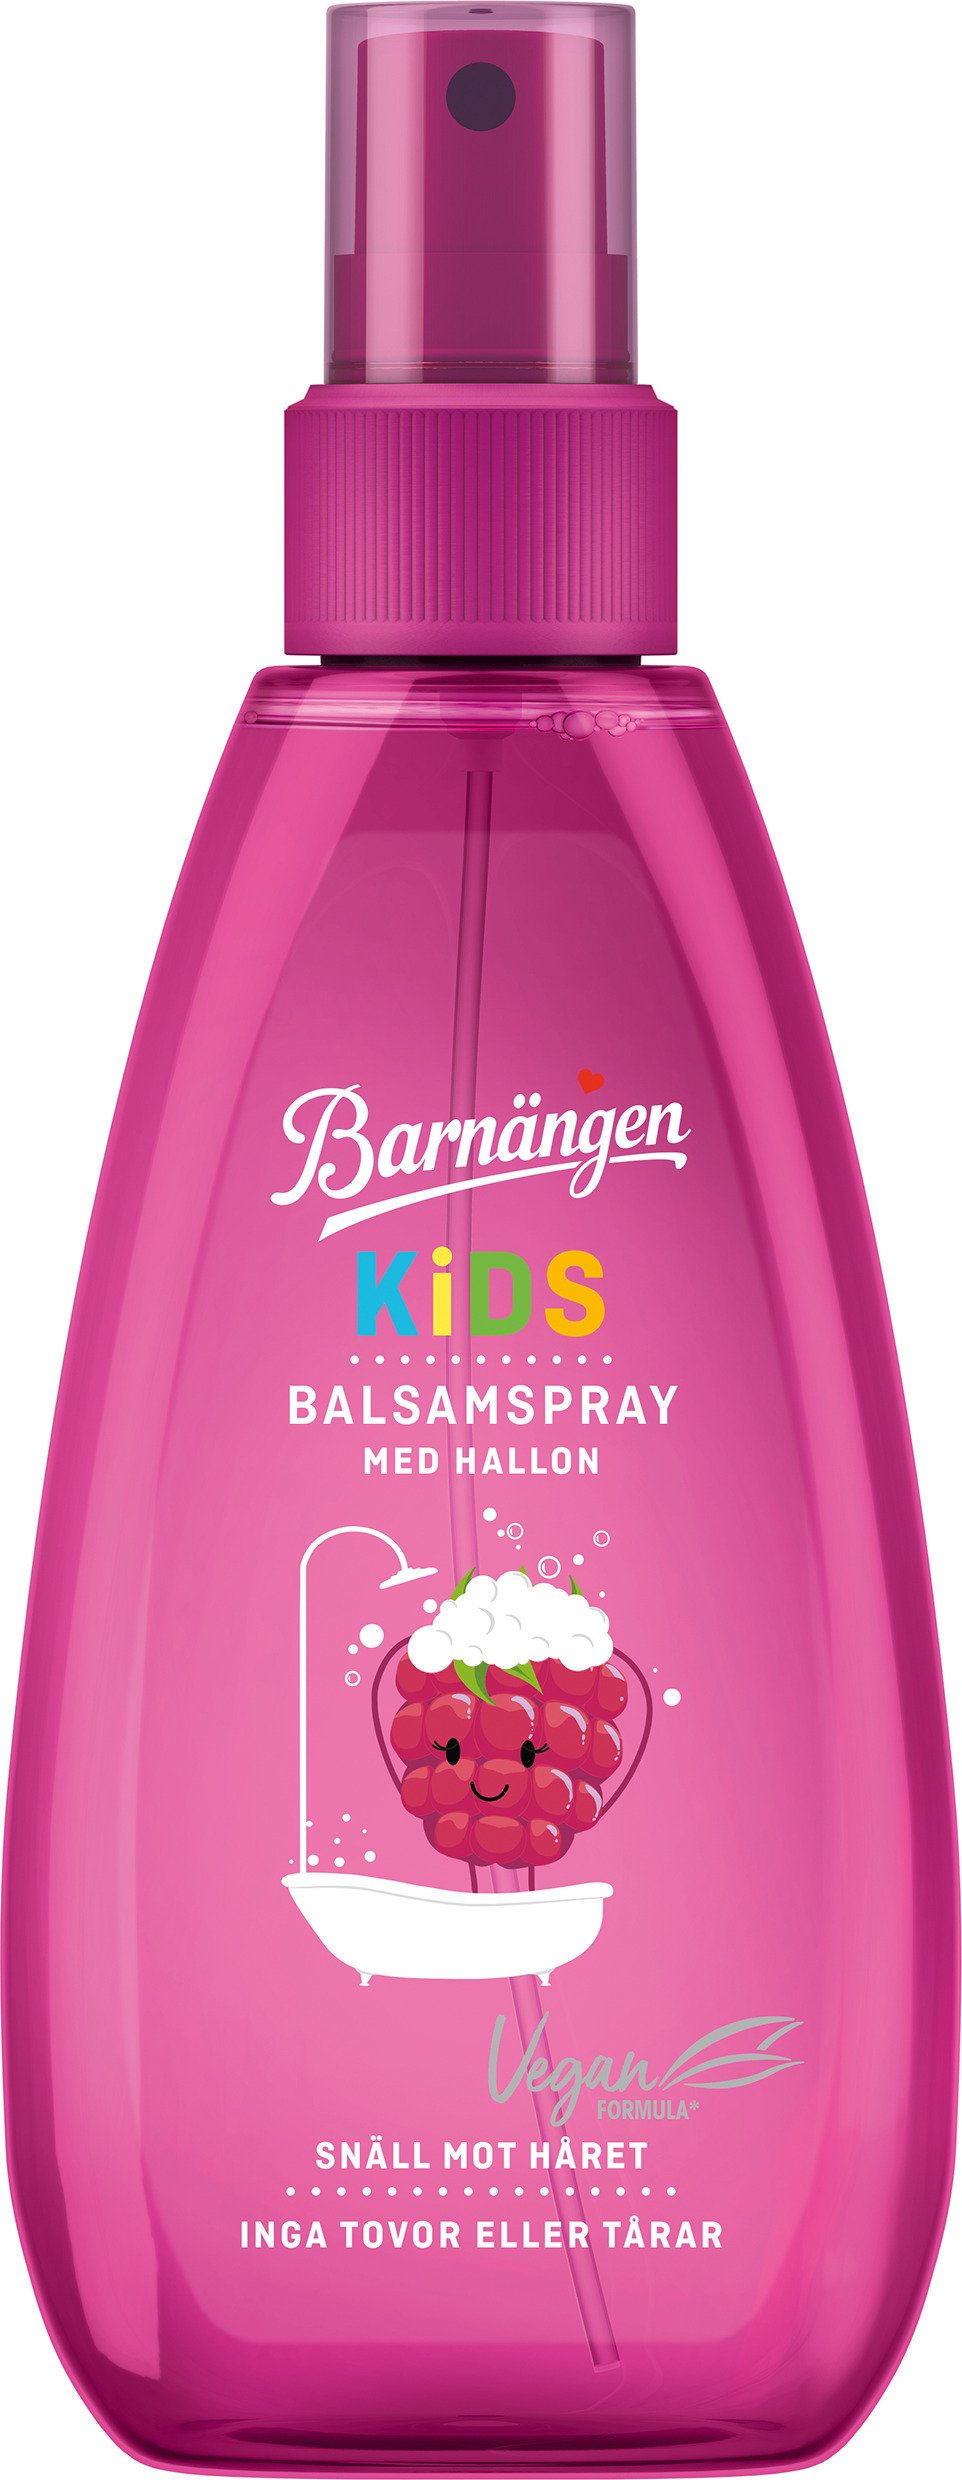 Barnängen Kids Hallon Balsamspray 150 ml